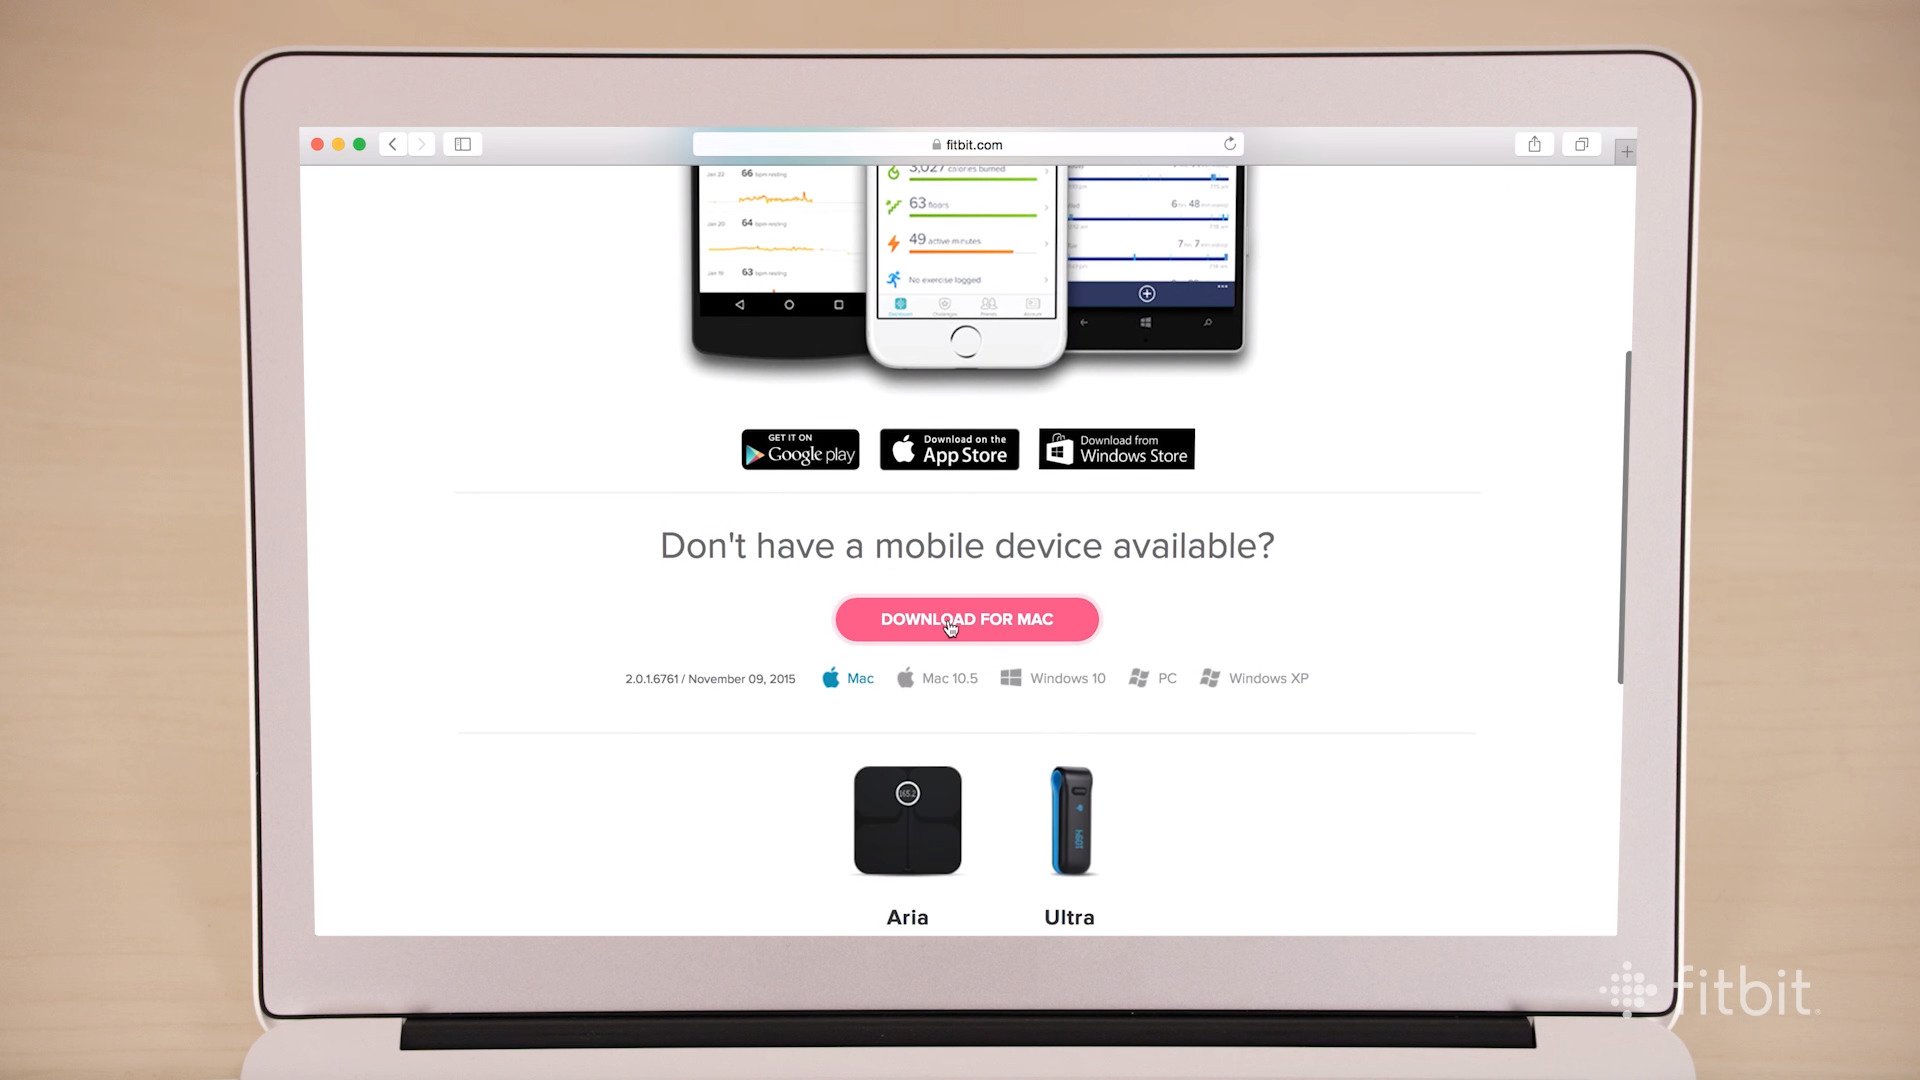 Hướng dẫn cài đặt, kết nối Fitbit với iPhone, Android và máy tính 7